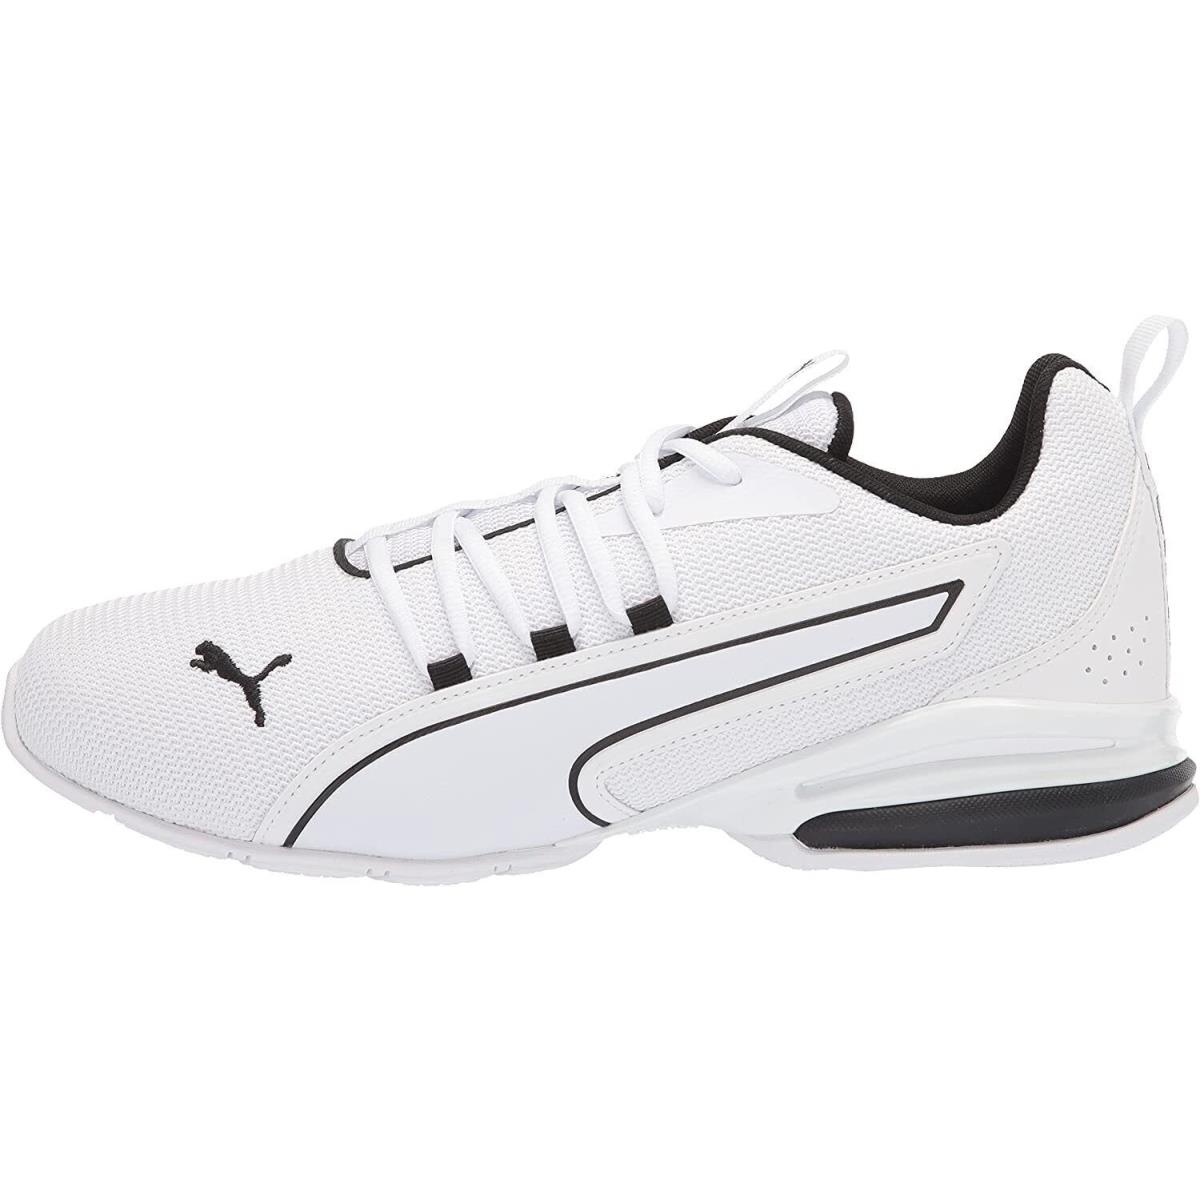 Puma Axelion Nxt White Men`s Athletic Training Sneakers 19565603 - White